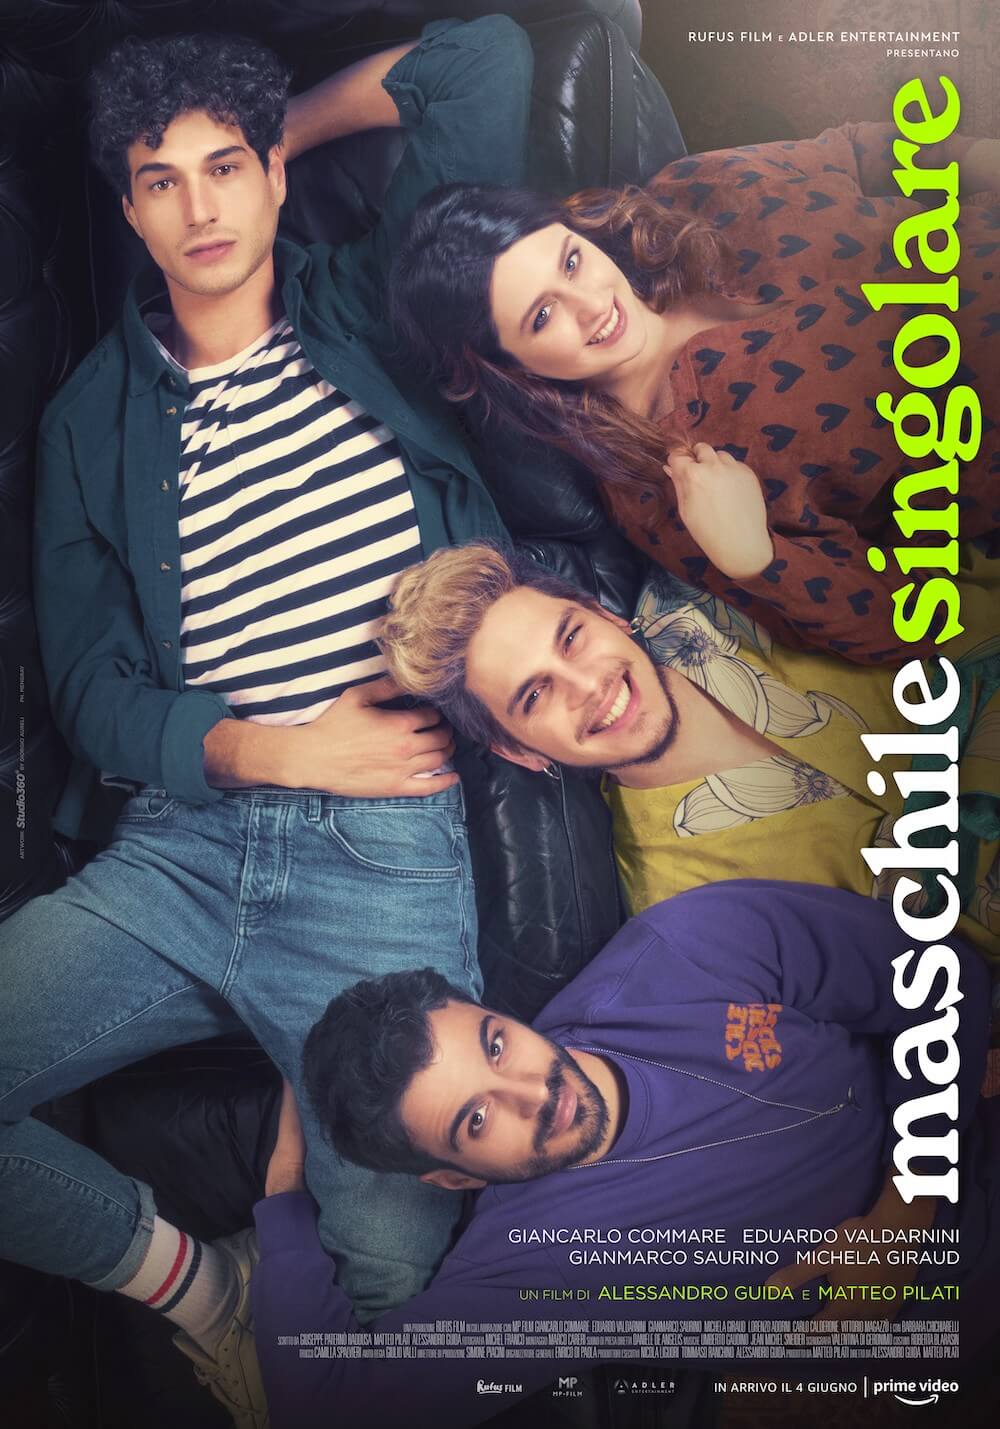 Maschile Singolare, il primo trailer della storia d’amore a tinte queer e tutta italiana in arrivo su Amazon Prime - MASCHILE SINGOLARE locandina - Gay.it